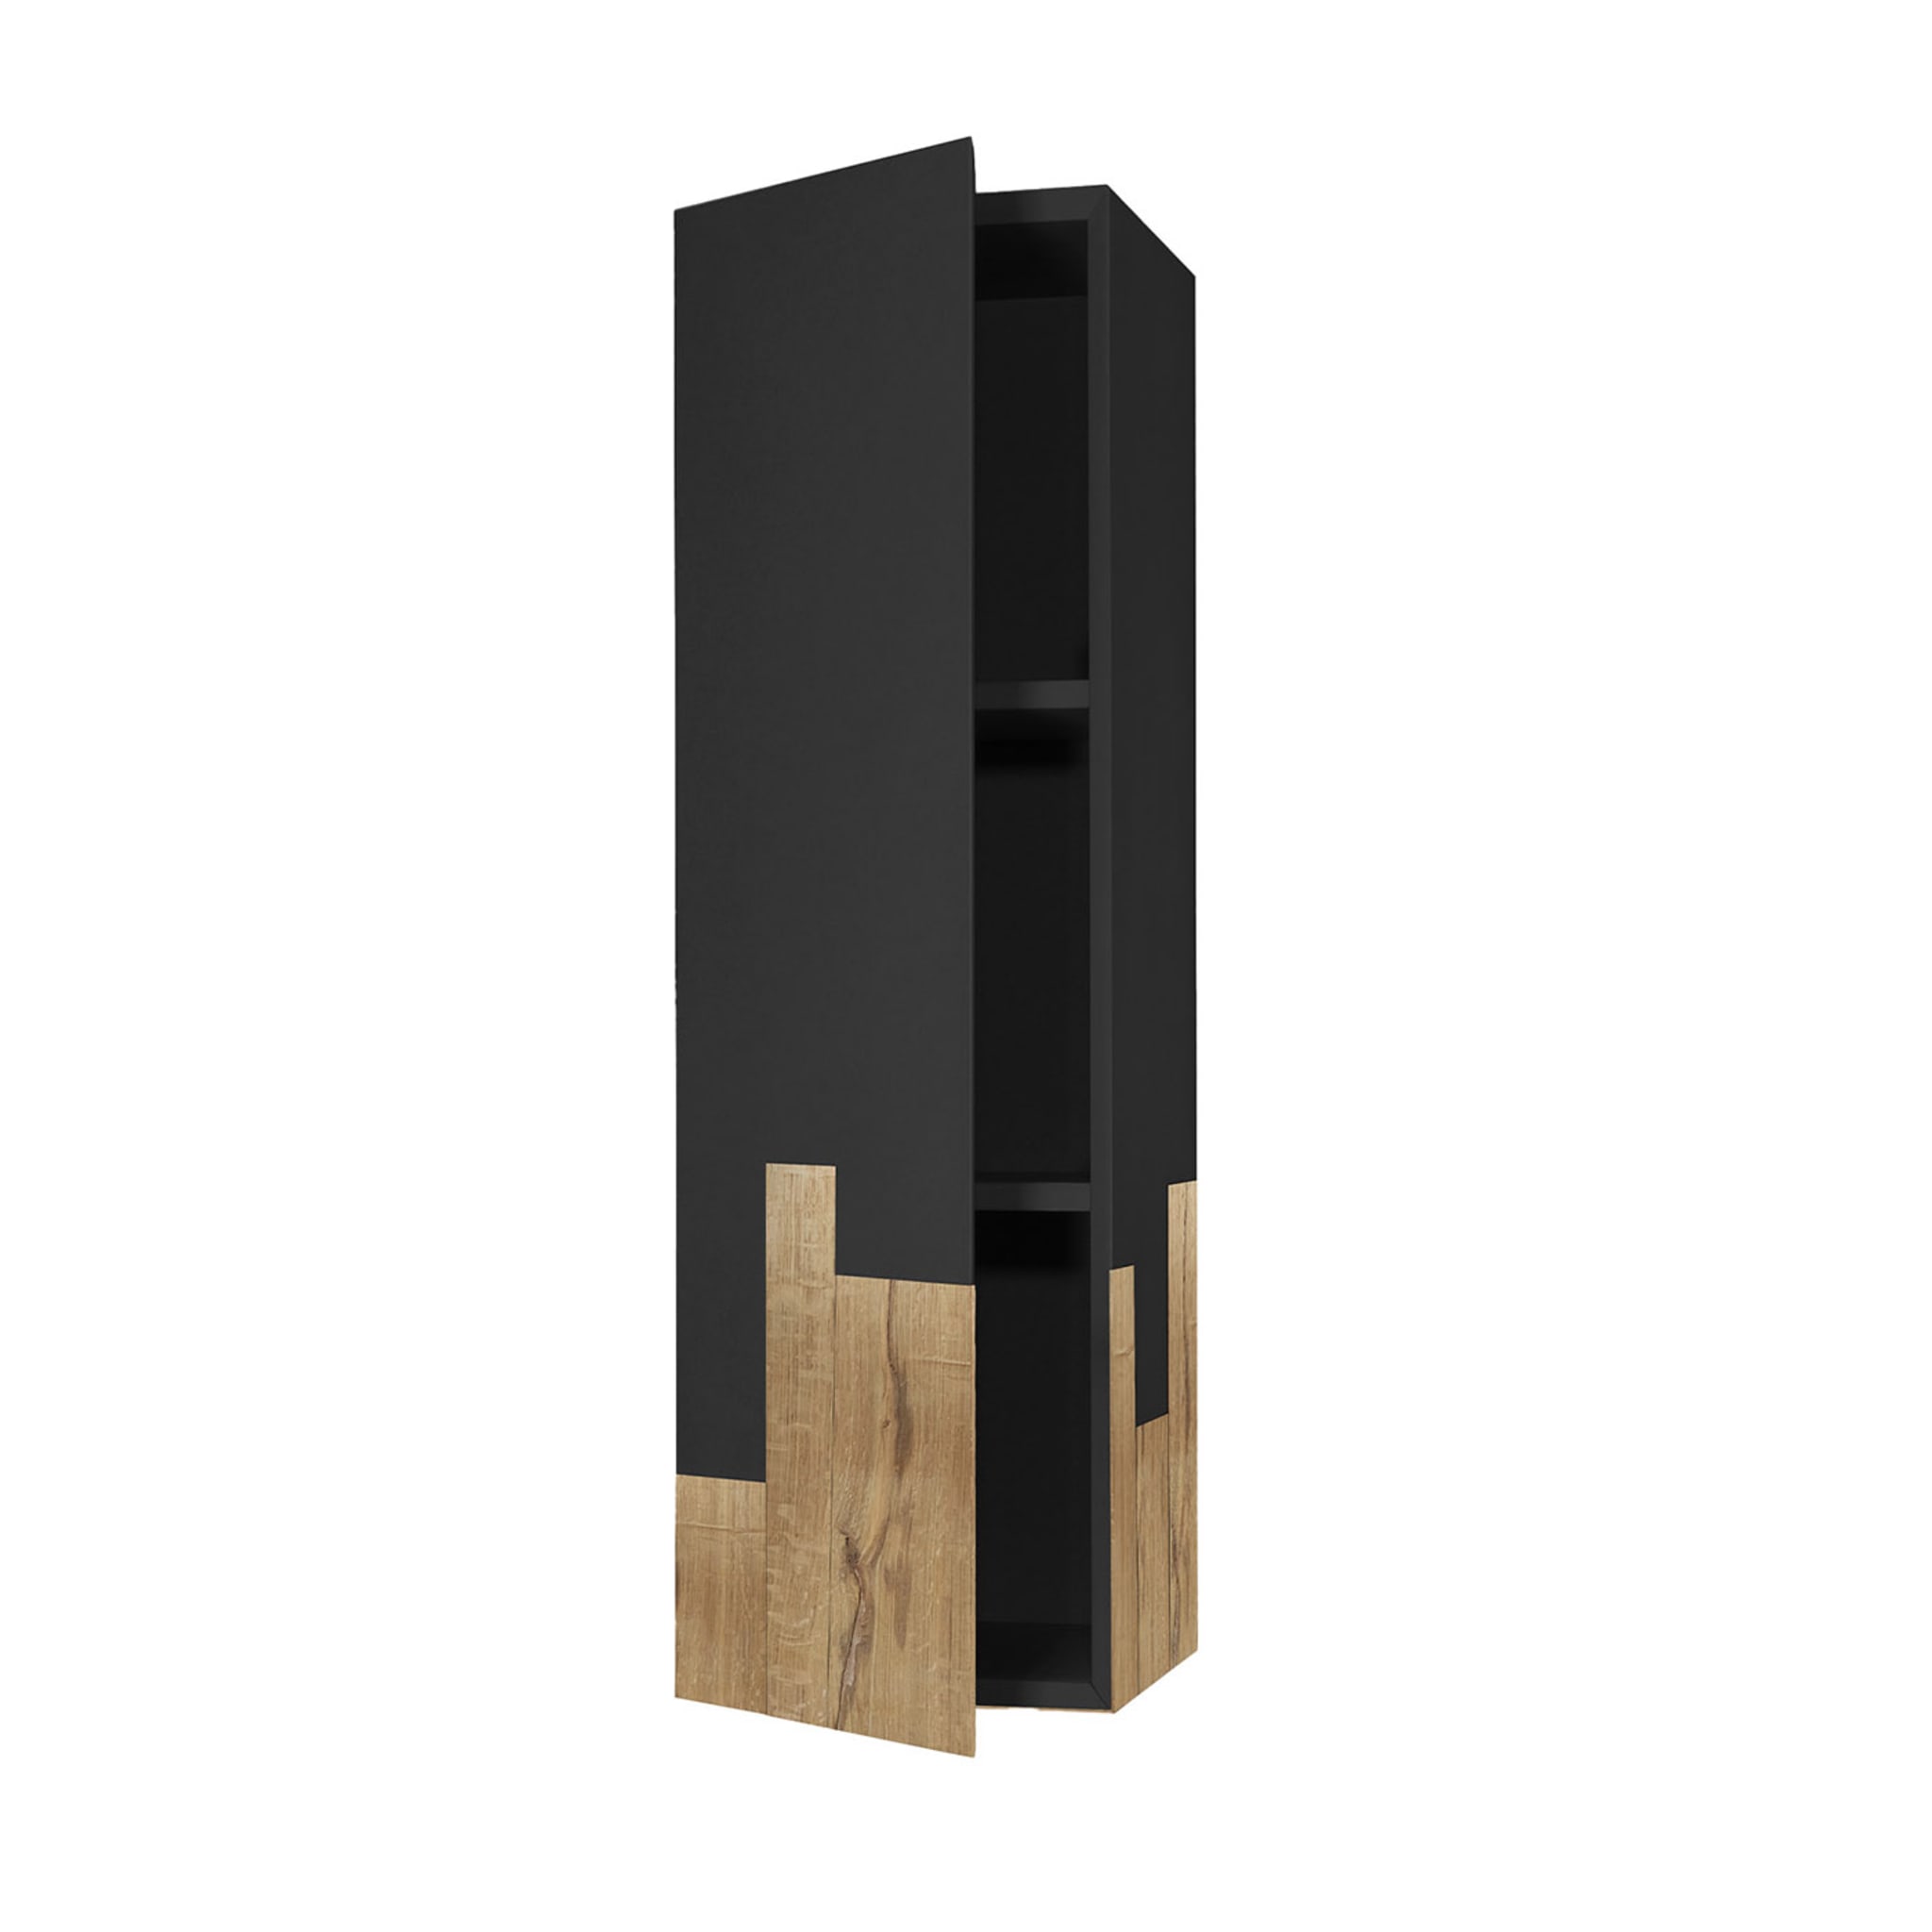 Black Suspended Vertical Fiammifero Cabinet by Giulia Contaldo - Main view